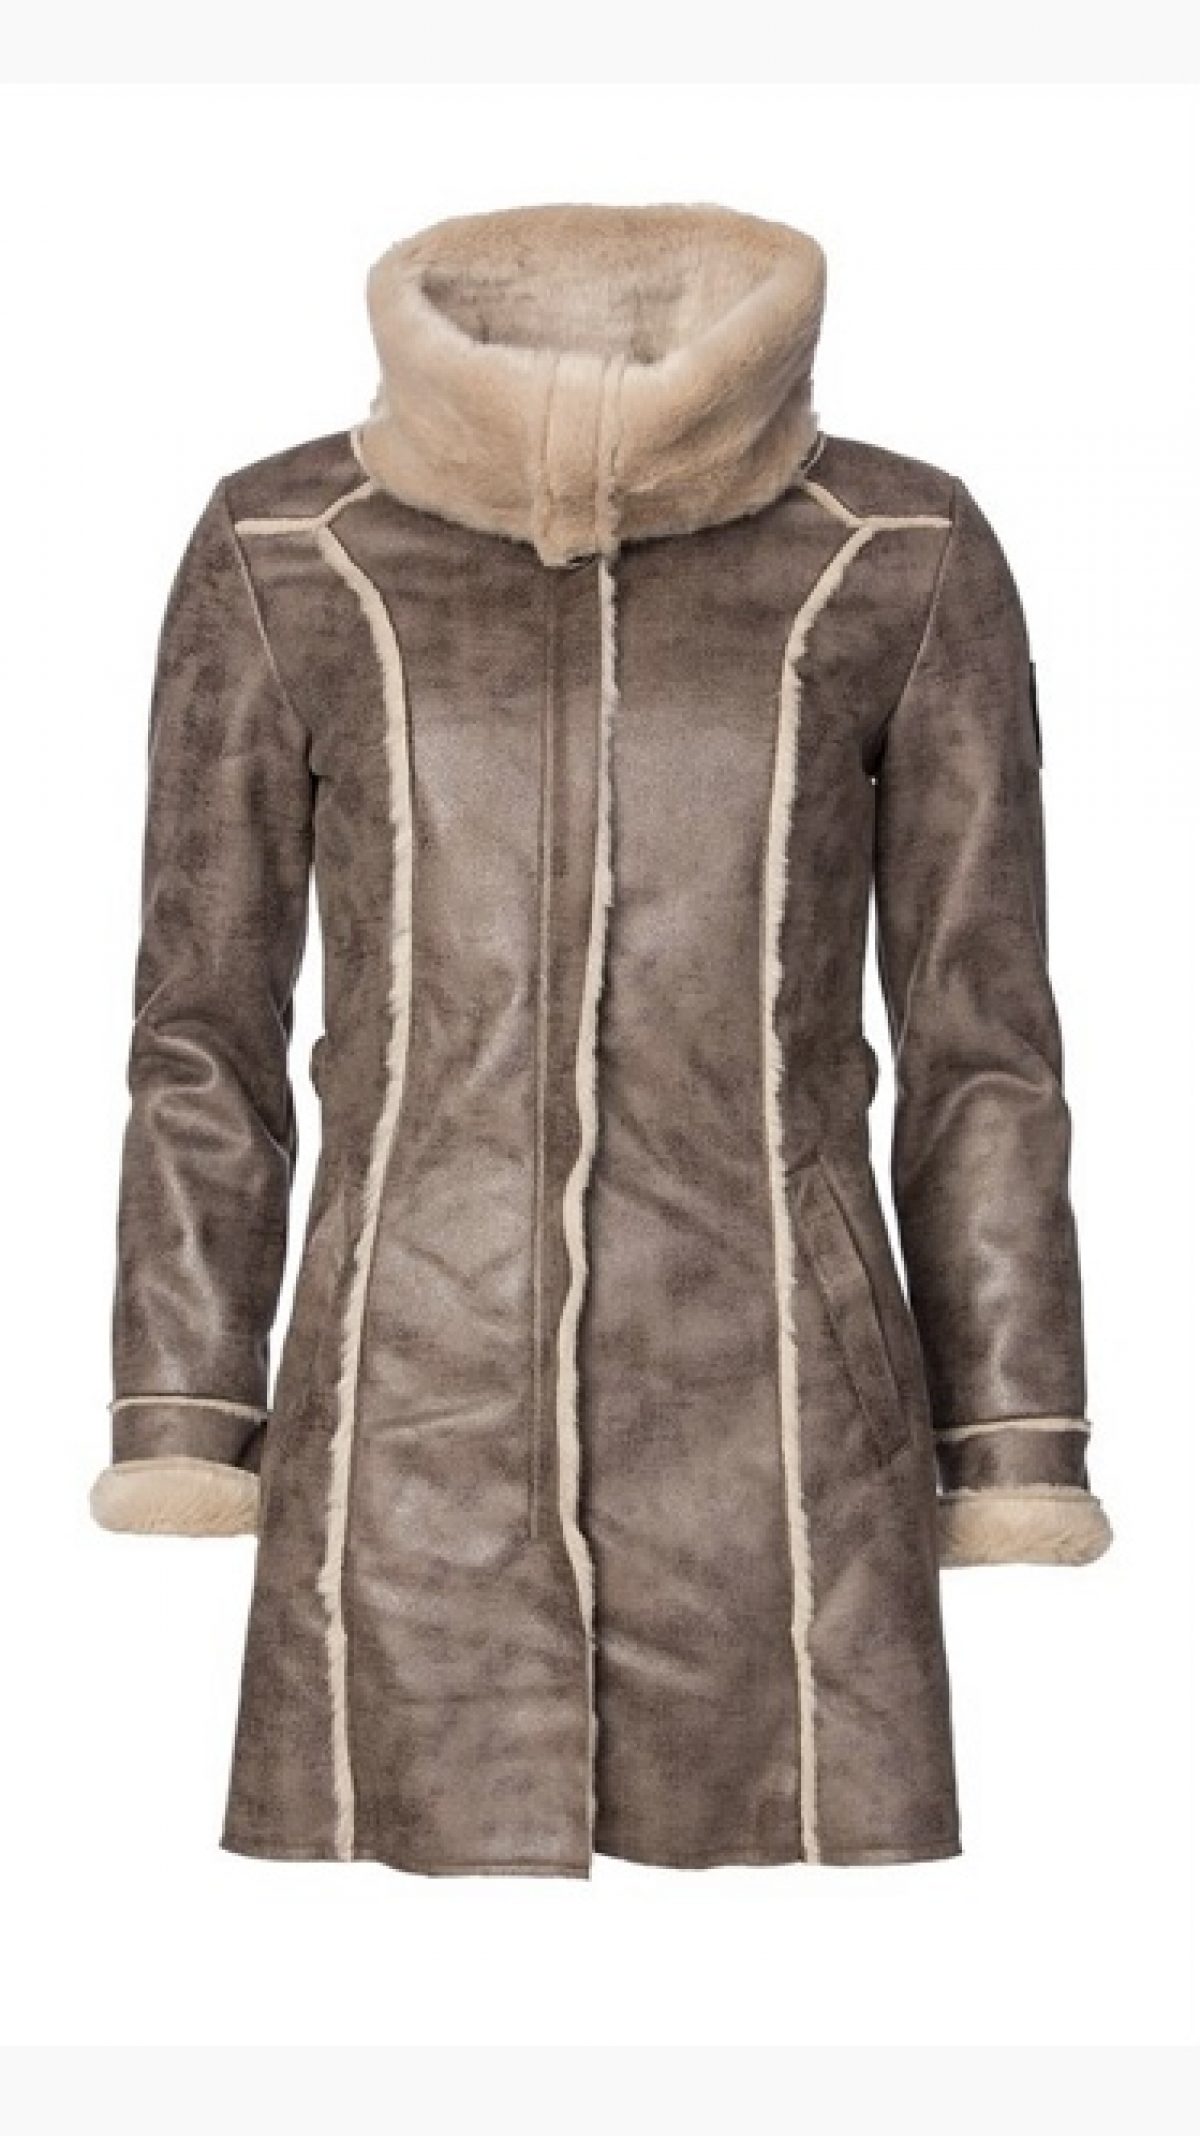 Dámský luxusní kožíškový kabát - M/L